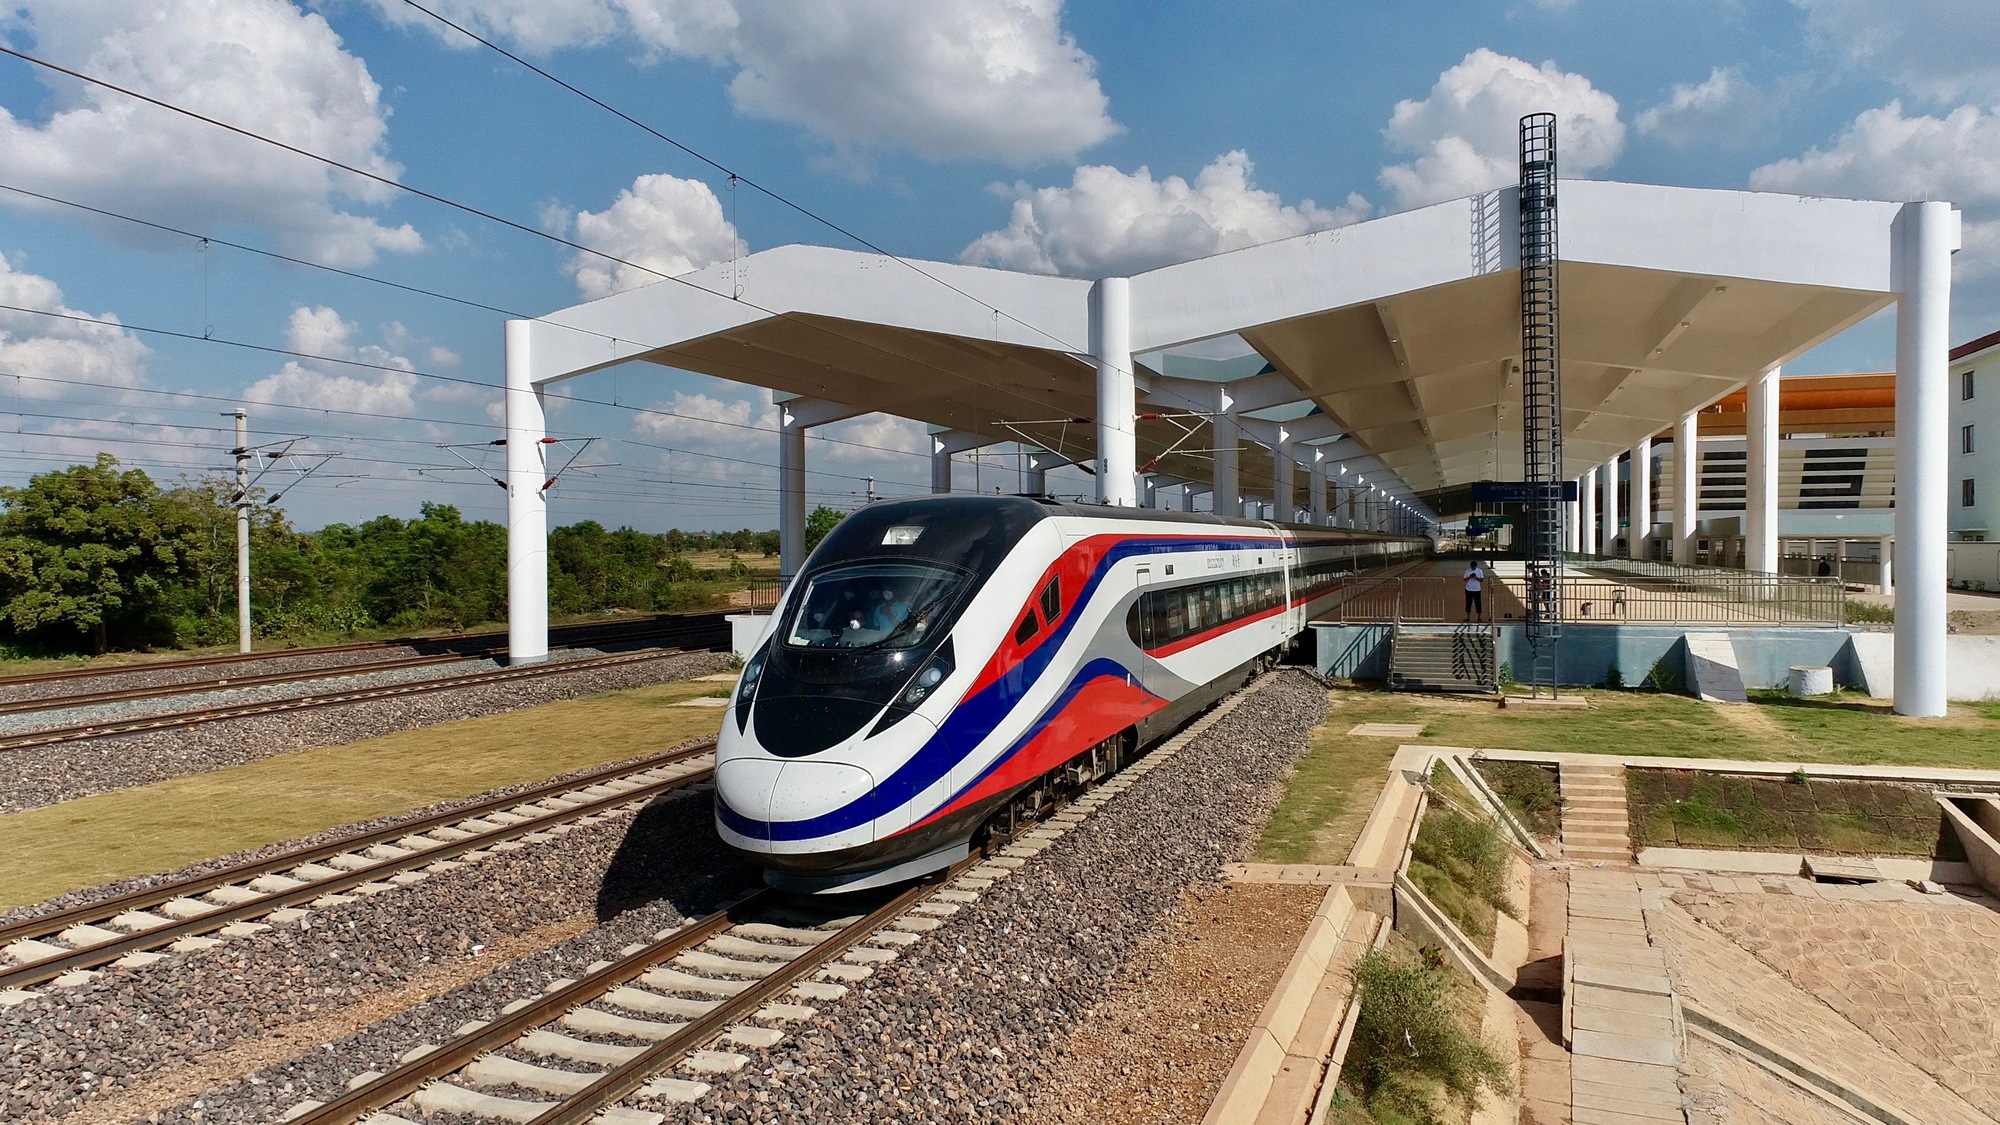 Tập đoàn lớn Trung Quốc khảo sát tuyến đường sắt tại Việt Nam suốt 5 năm: Dự án 100.000 tỷ đồng tái khởi động? - Ảnh 3.